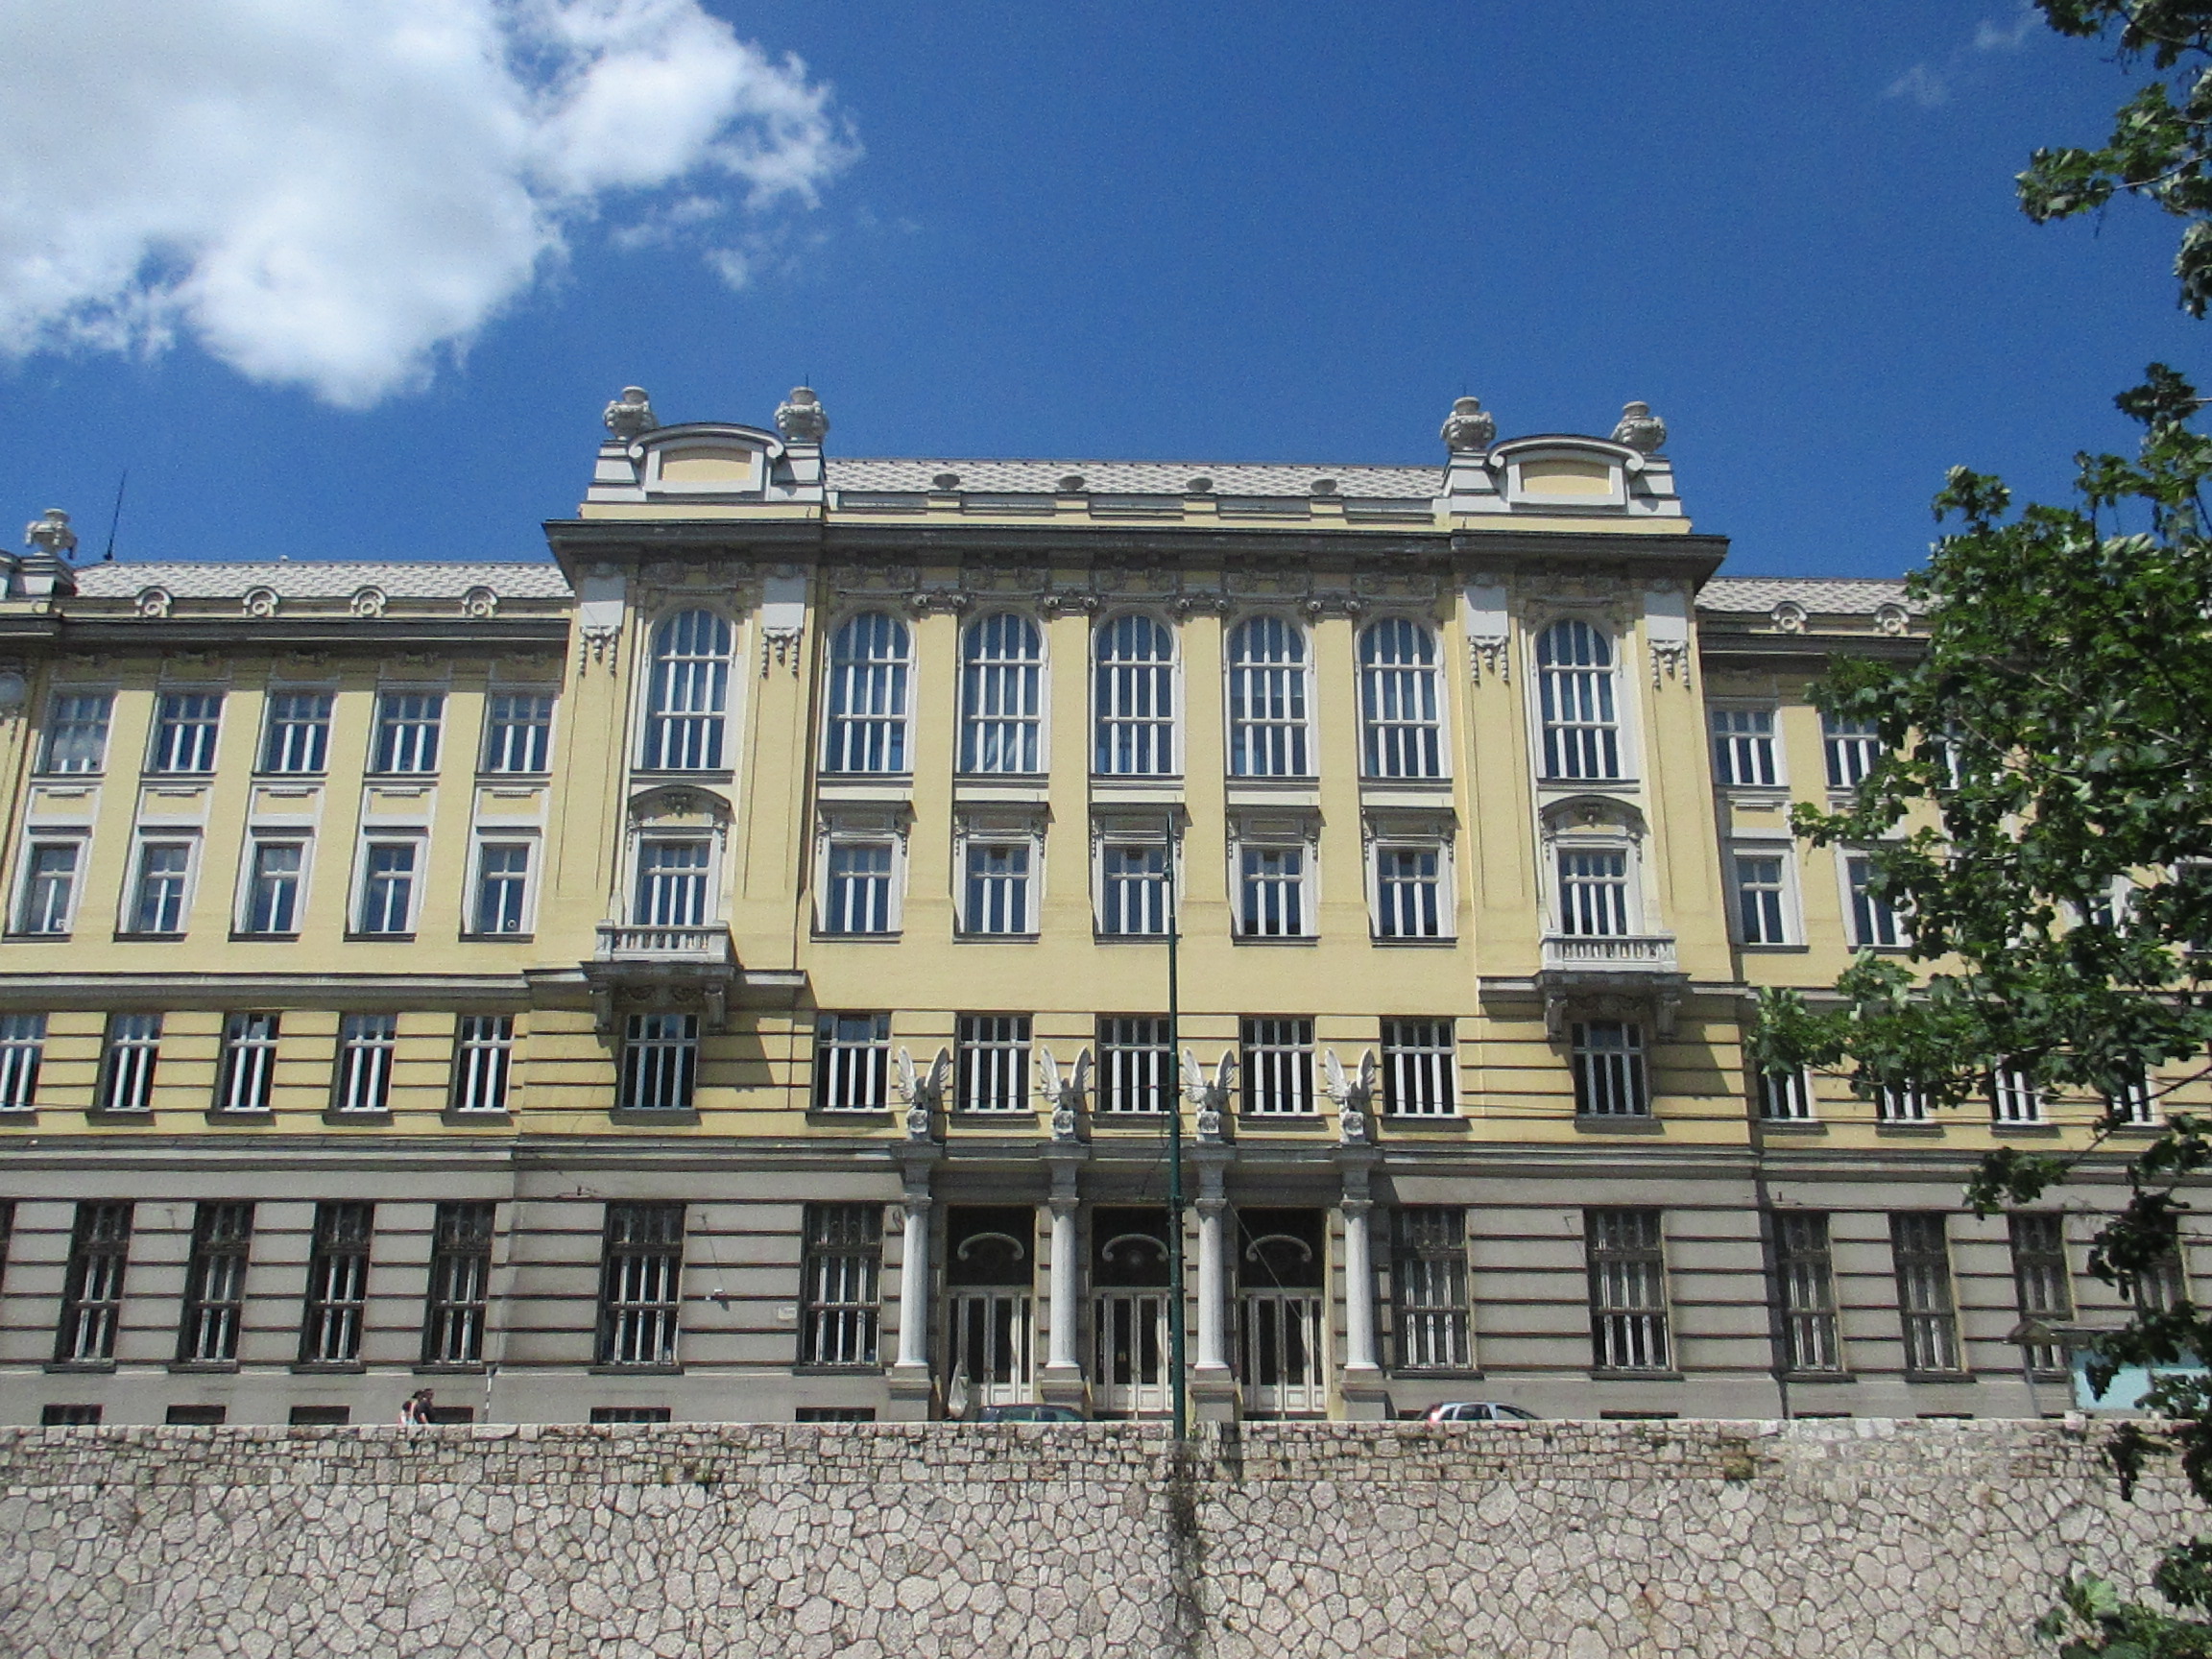 A Központi Postahivatalt Vancaš neoklasszicista stílusban építette 1907-1913 között. Az ostrom alatt porig égett csakúgy, mint a központi könyvtár és a Hotel Central.